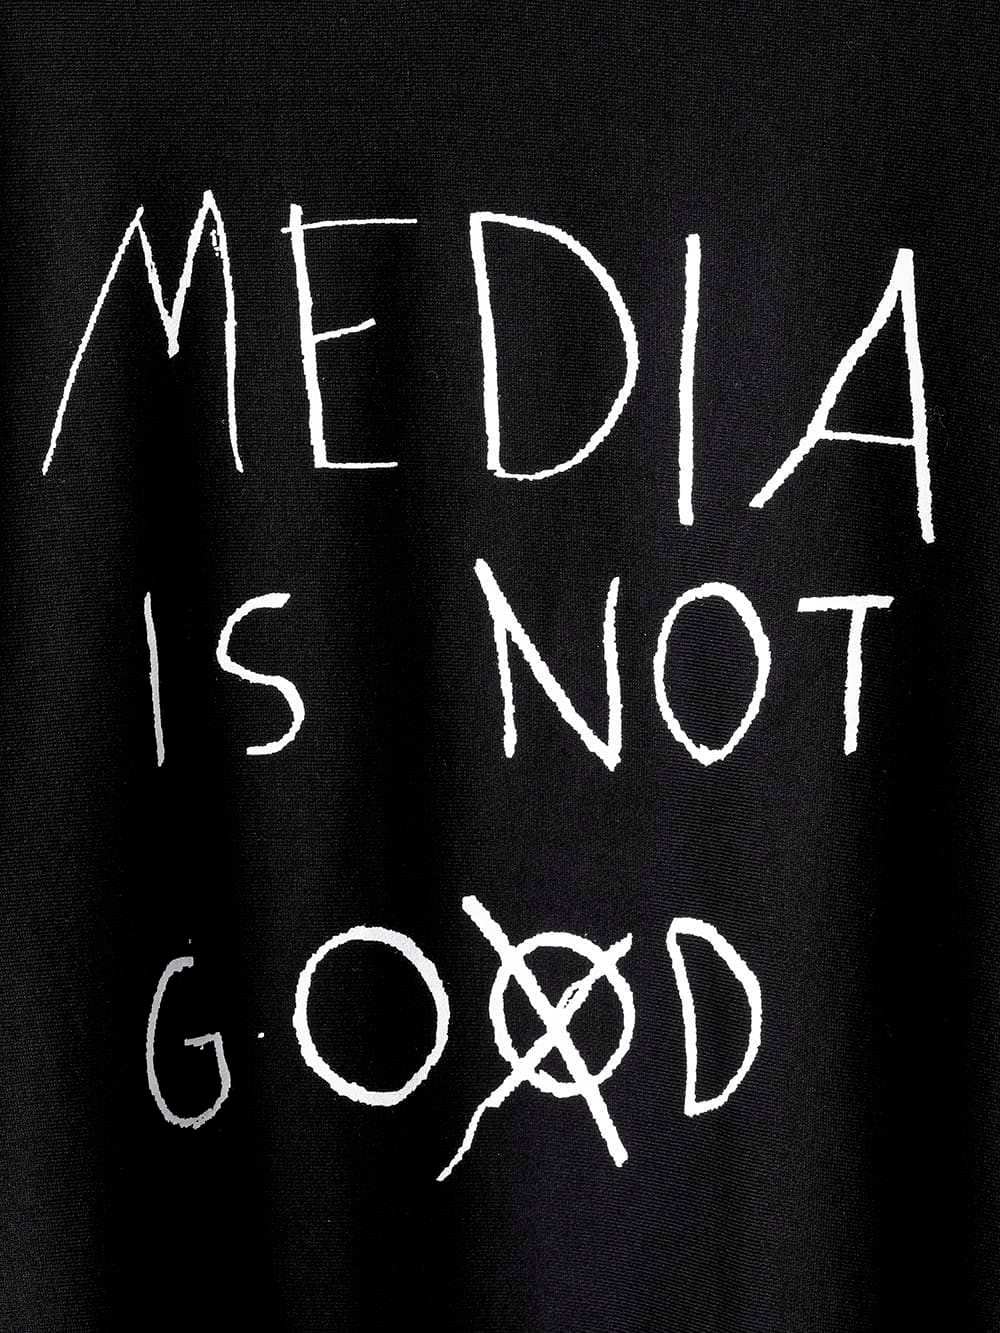 media is not go⨂d. type 2 (oversized crew neck sweatshirt)